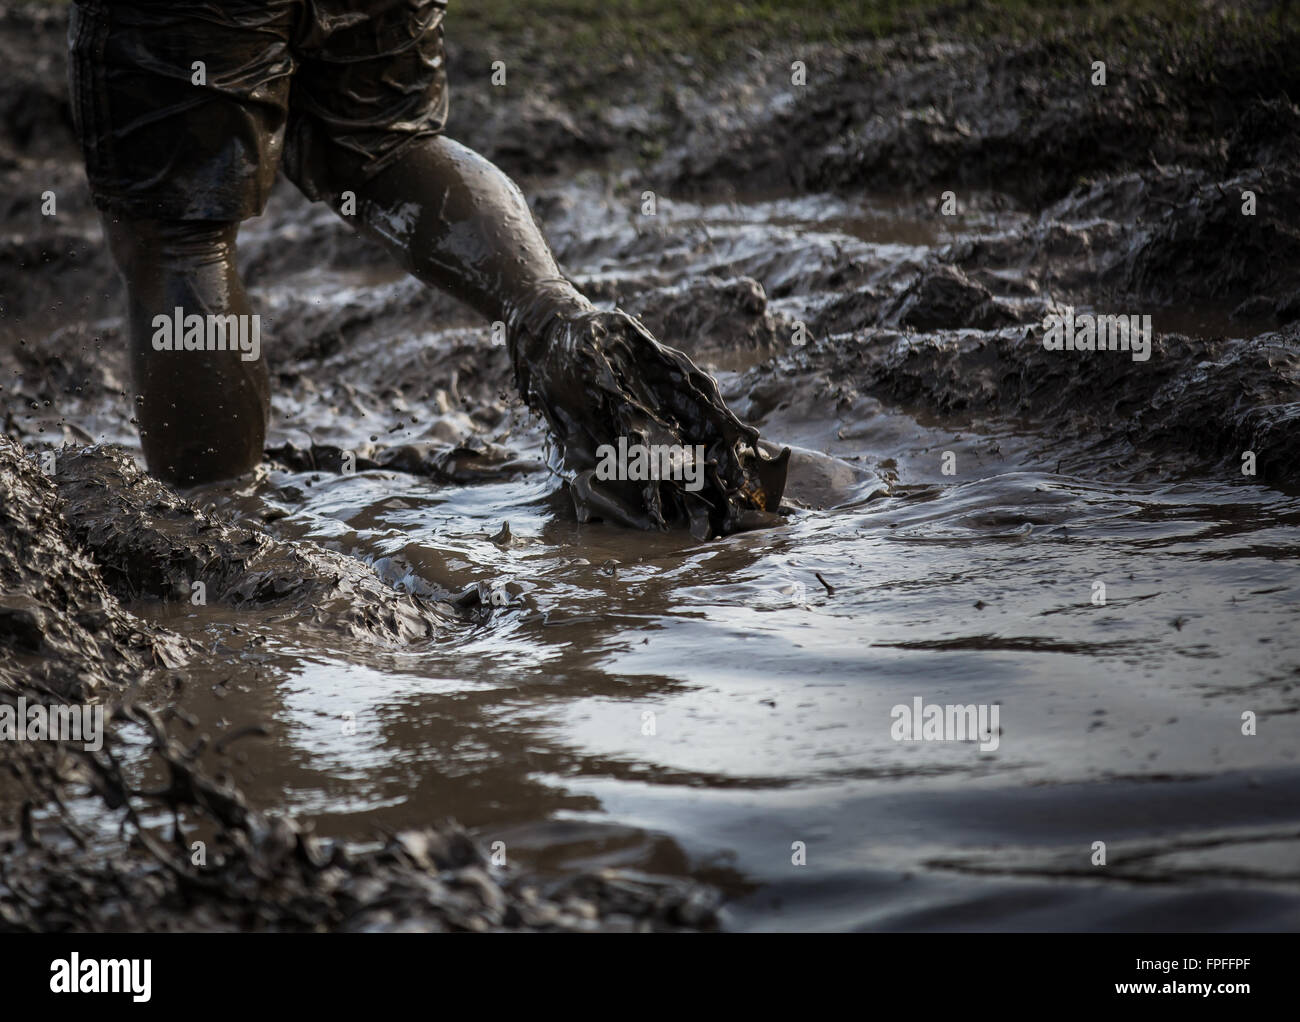 Deep acqua fangosa con piedini schizzi attraverso e trascinando il fango in una gara Foto Stock